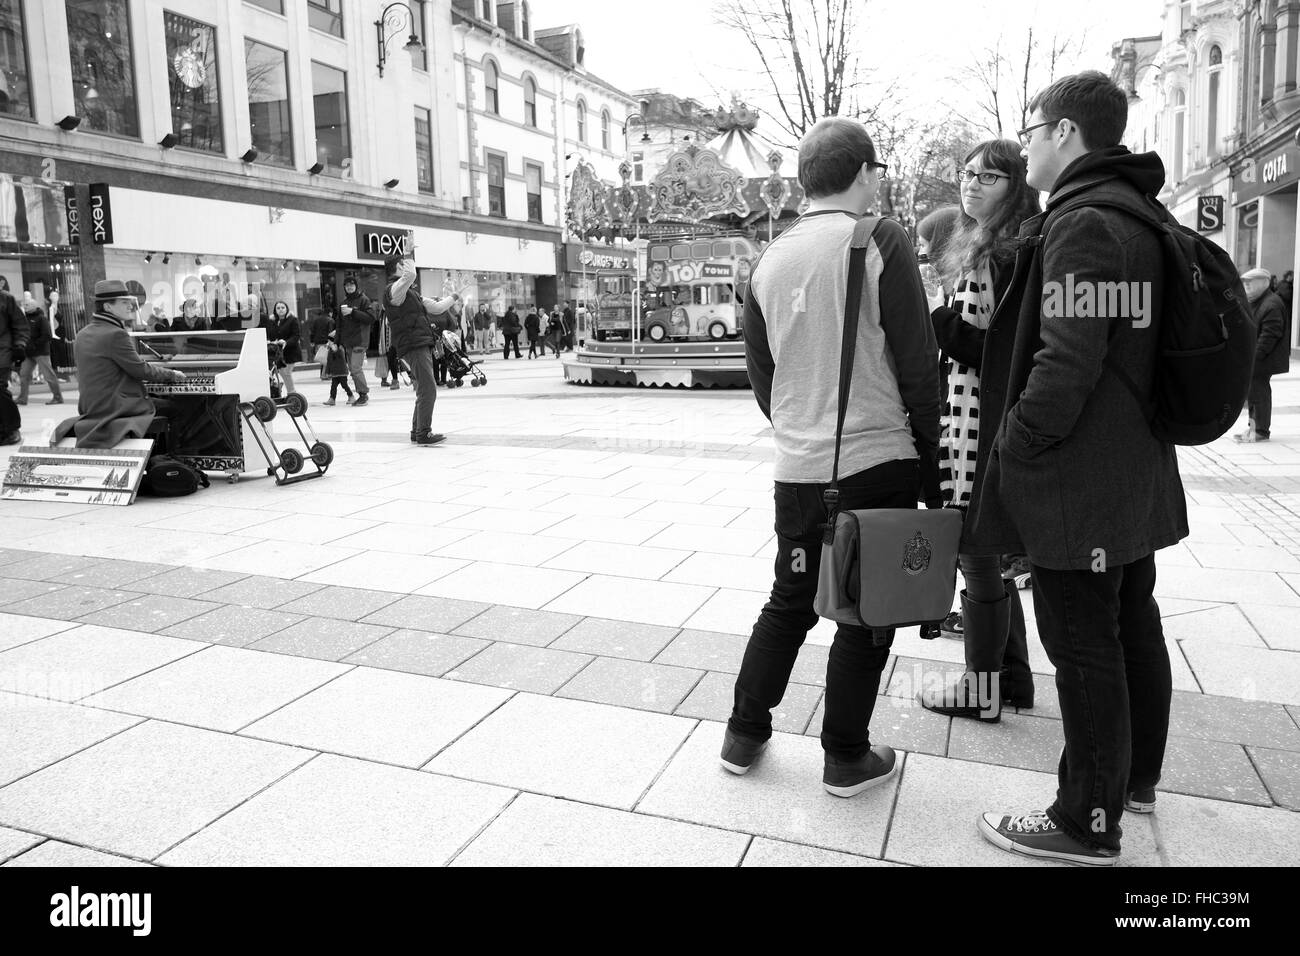 Les jeunes à Cardiff regardant un musicien de rue jouant son piano mobile. Février 2016 Banque D'Images